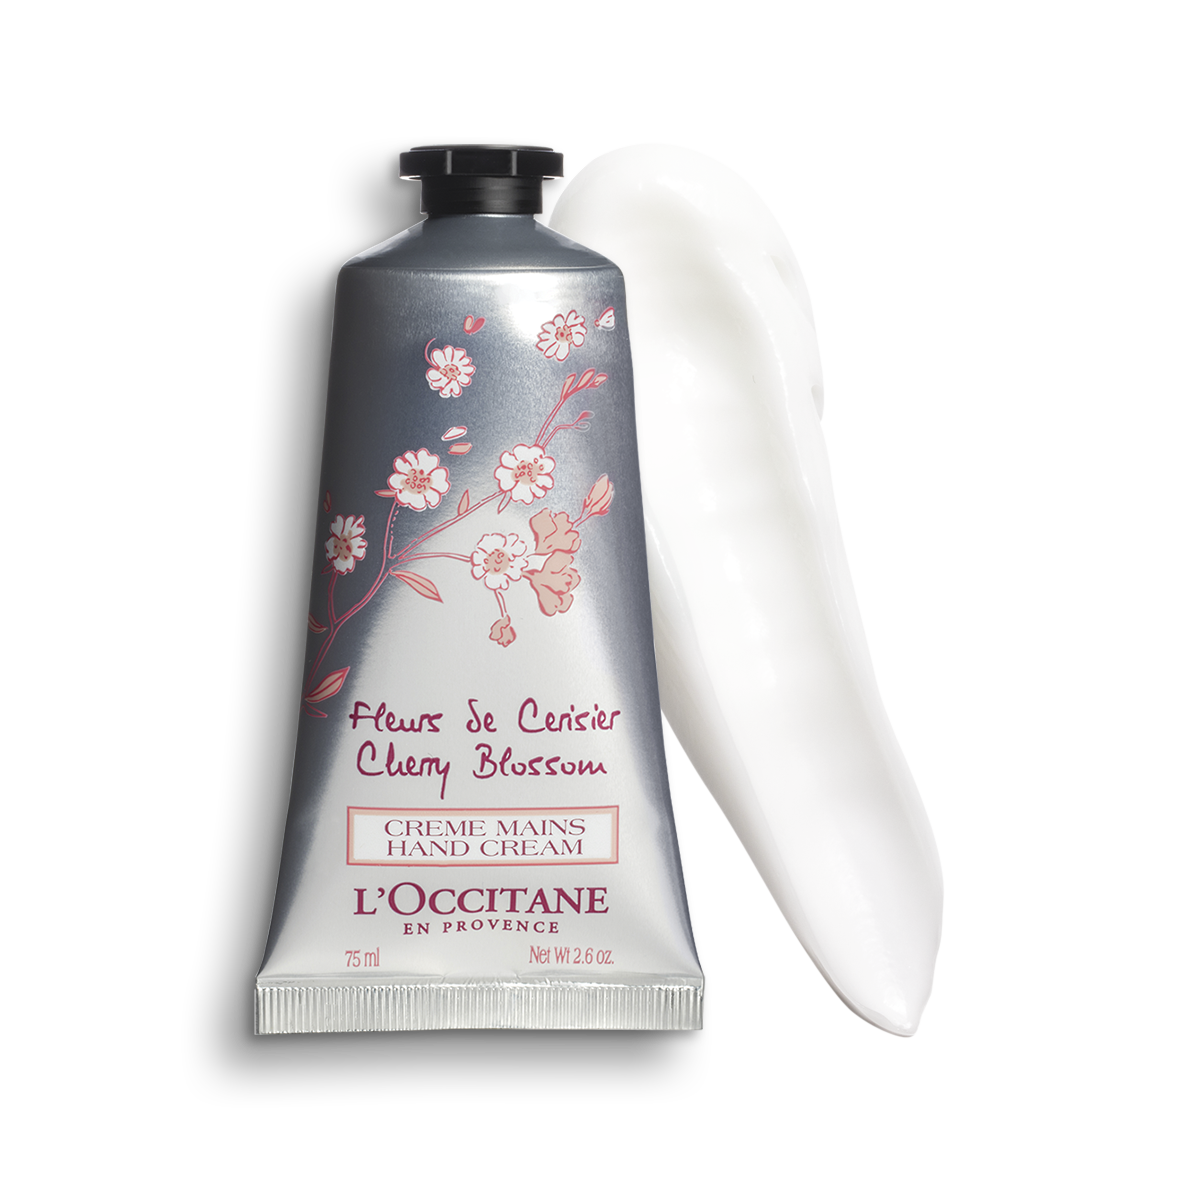 L'Occitane Creme mains hand Cream. Крем l'Occitane fleurs de cerisier. L'Occitane en Provence крем. Крем для рук 75 ml от l'Occitane. Blossoms крем